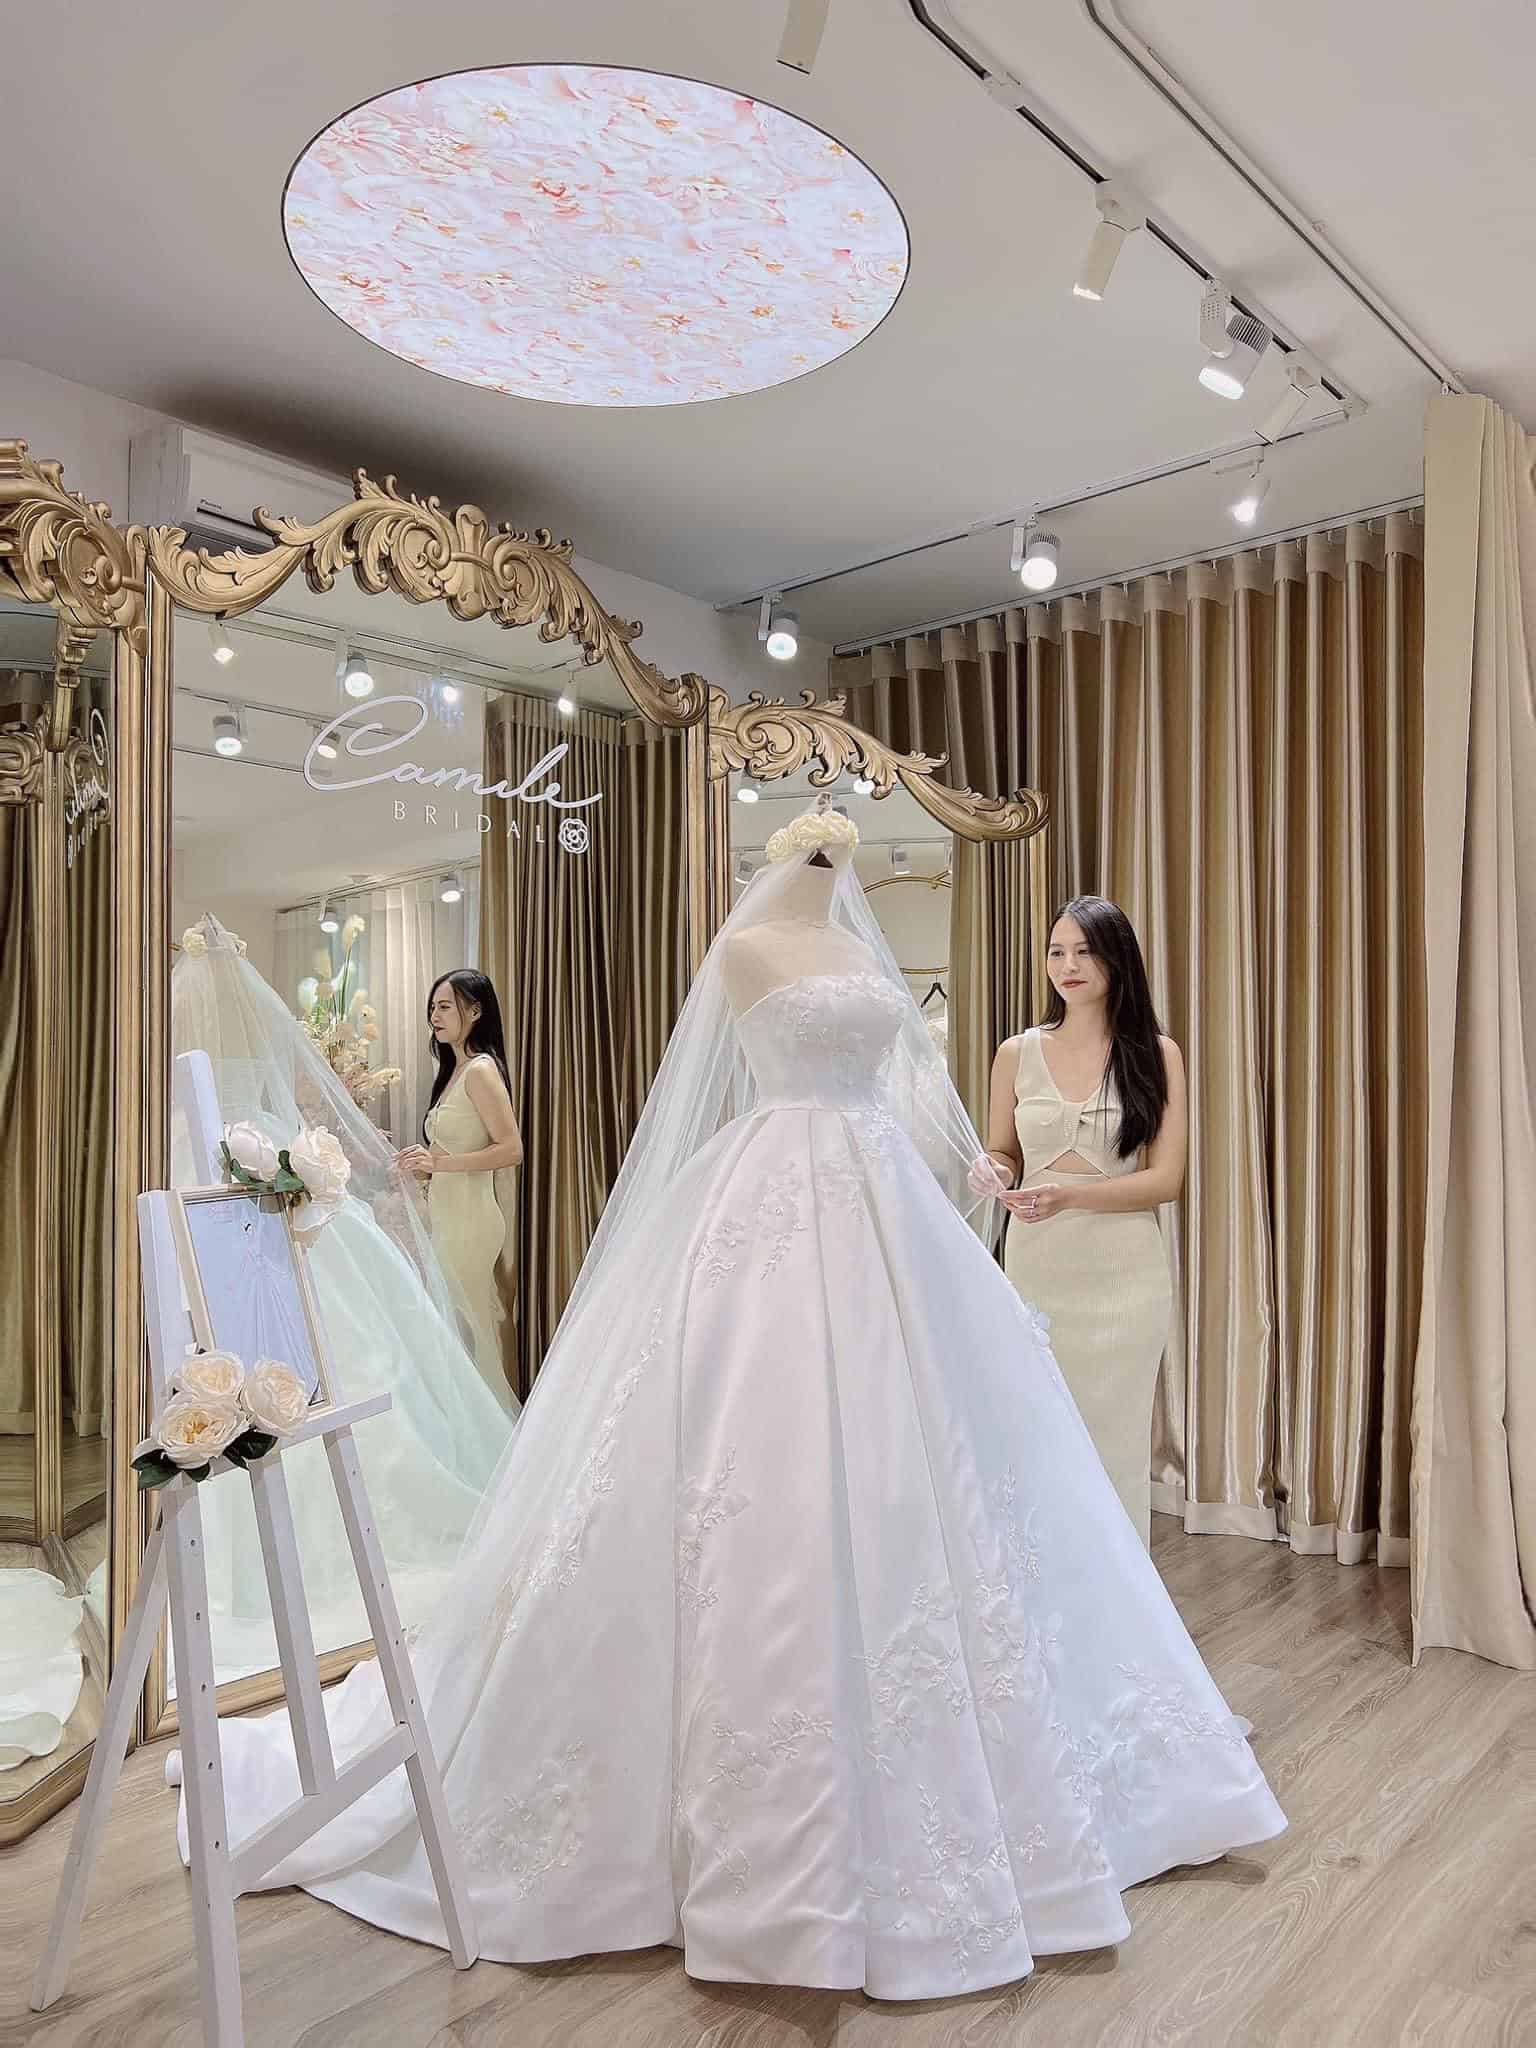 Vóc dáng mẹ ba con đáng ngưỡng mộ của Ốc Thanh Vân khi thử váy cưới